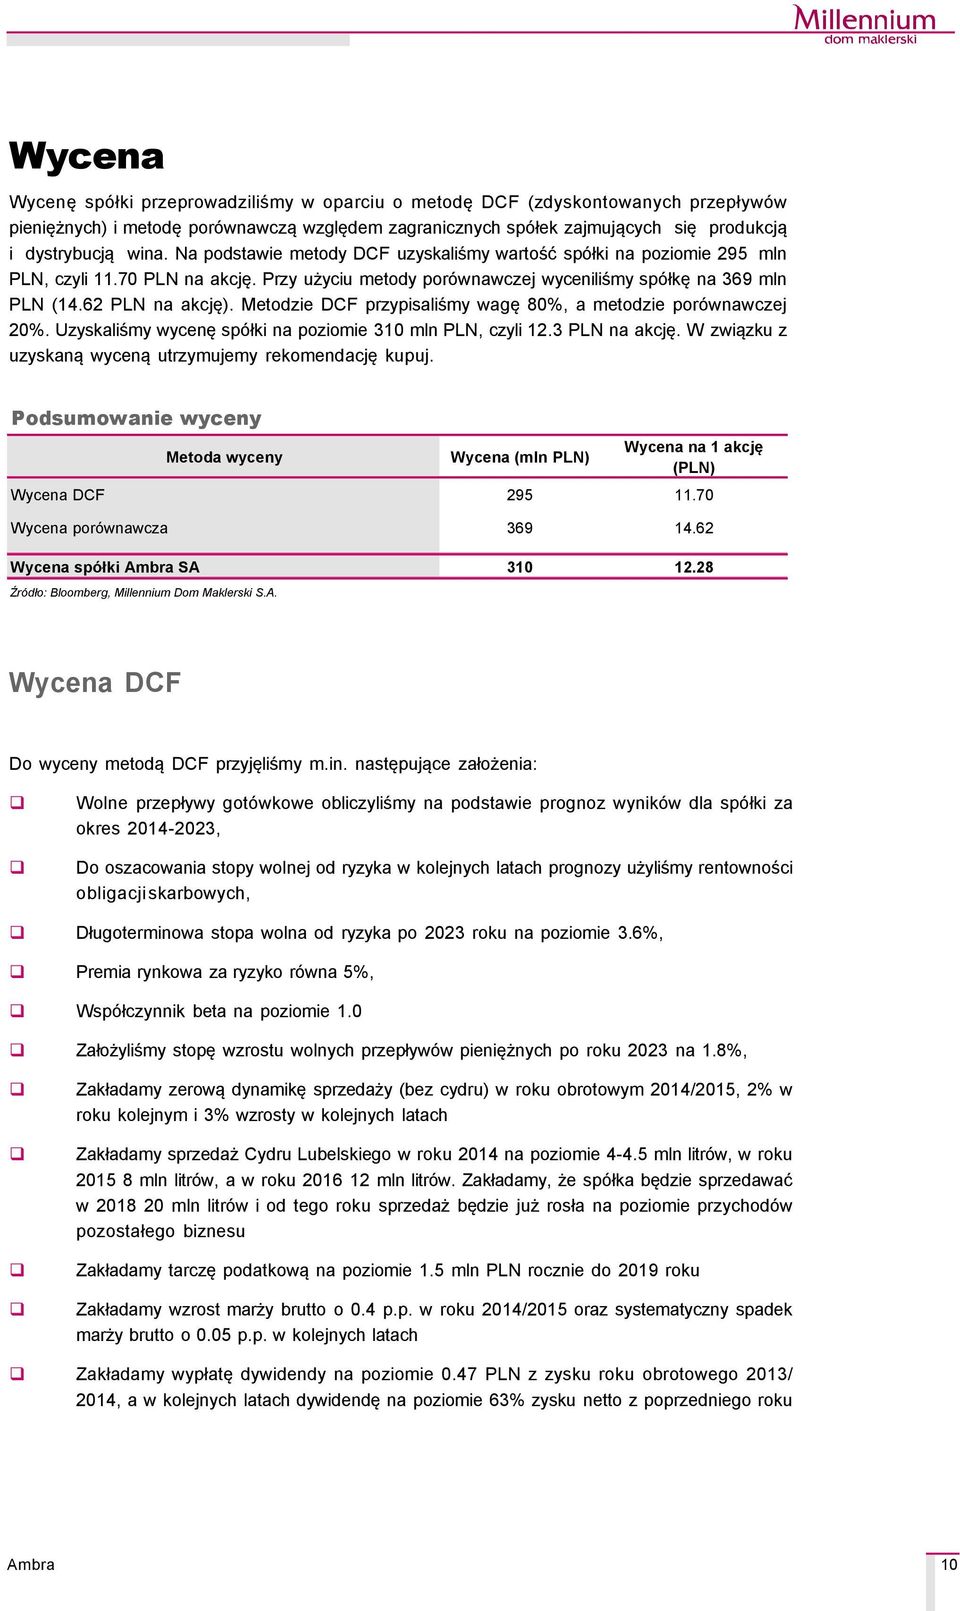 Metodzie DCF przypisaliśmy wagę 8%, a metodzie porçwnawczej 2%. Uzyskaliśmy wycenę spçłki na poziomie 31 mln PLN, czyli 12.3 PLN na akcję. W związku z uzyskaną wyceną utrzymujemy rekomendację kupuj.